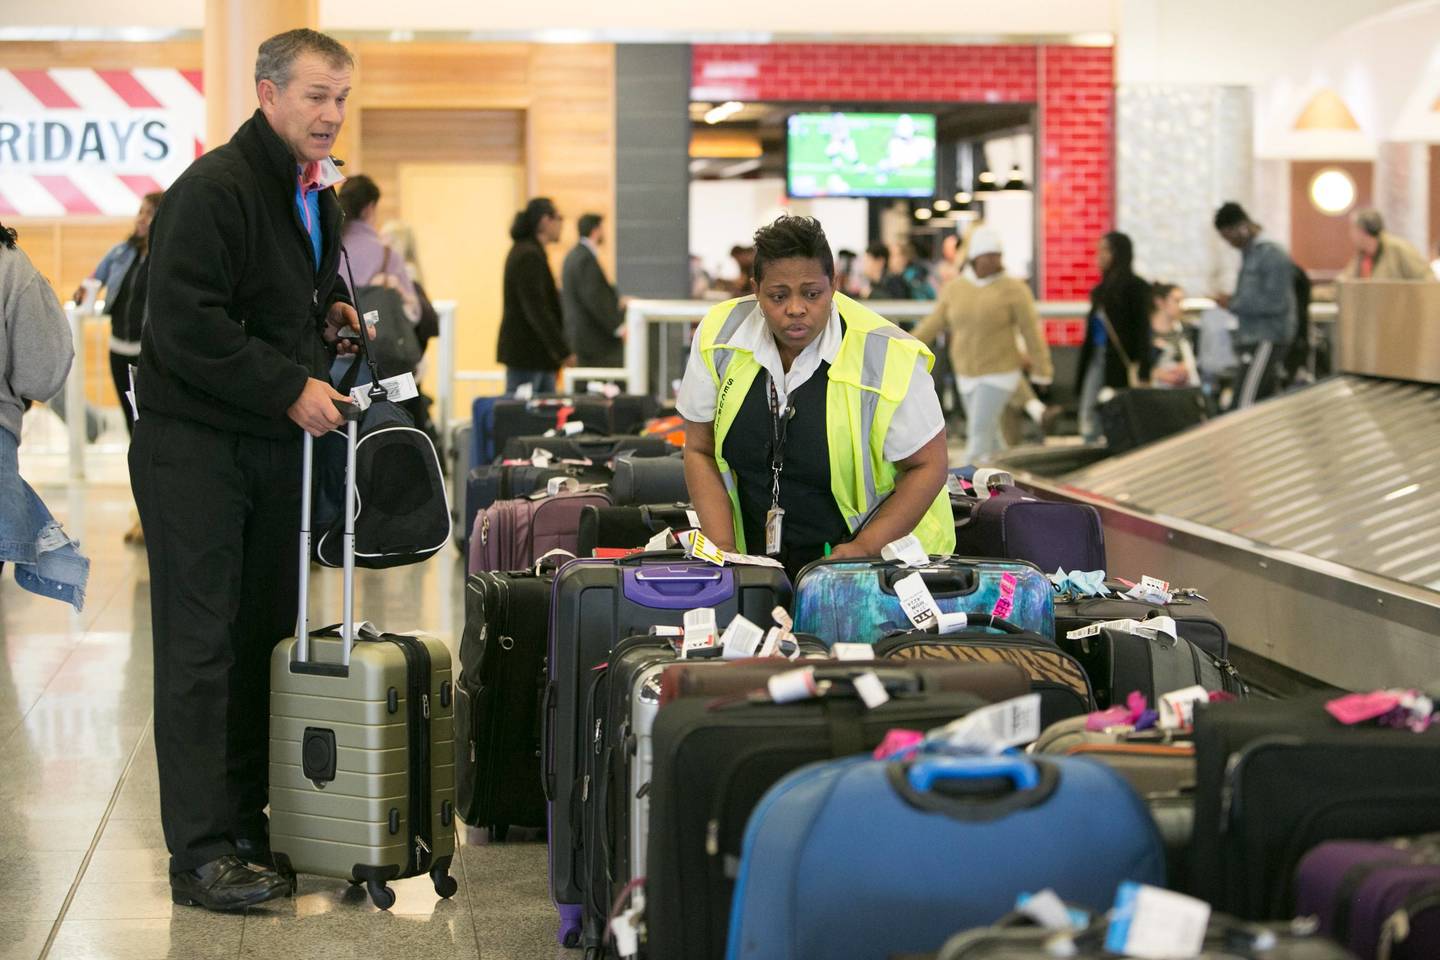 Amerikos pareigūnai sako, kad sistema atnaujinta siekiant keliautojams suteikti aiškesnių rekomendacijų.<br> AFP/Scanpix nuotr.